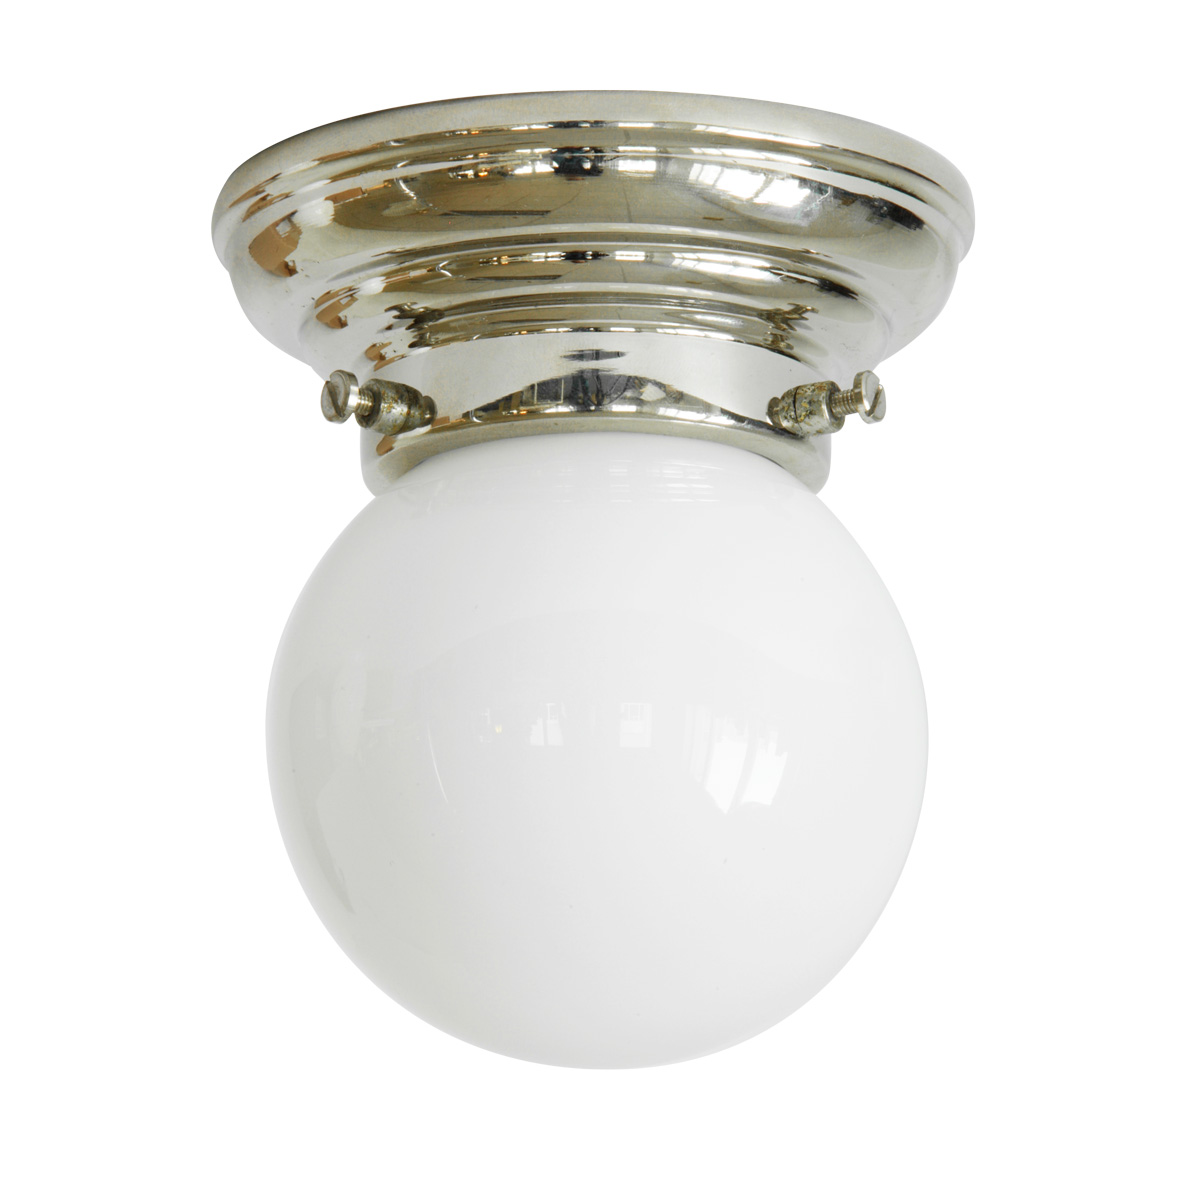 Sehr kleine Deckenlampe mit weißem Kugelglas Ø 10 cm: Kleine Kugel-Deckenleuchte (10 cm), hier abgebildet mit Deckenteil in Messing glanzvernickelt